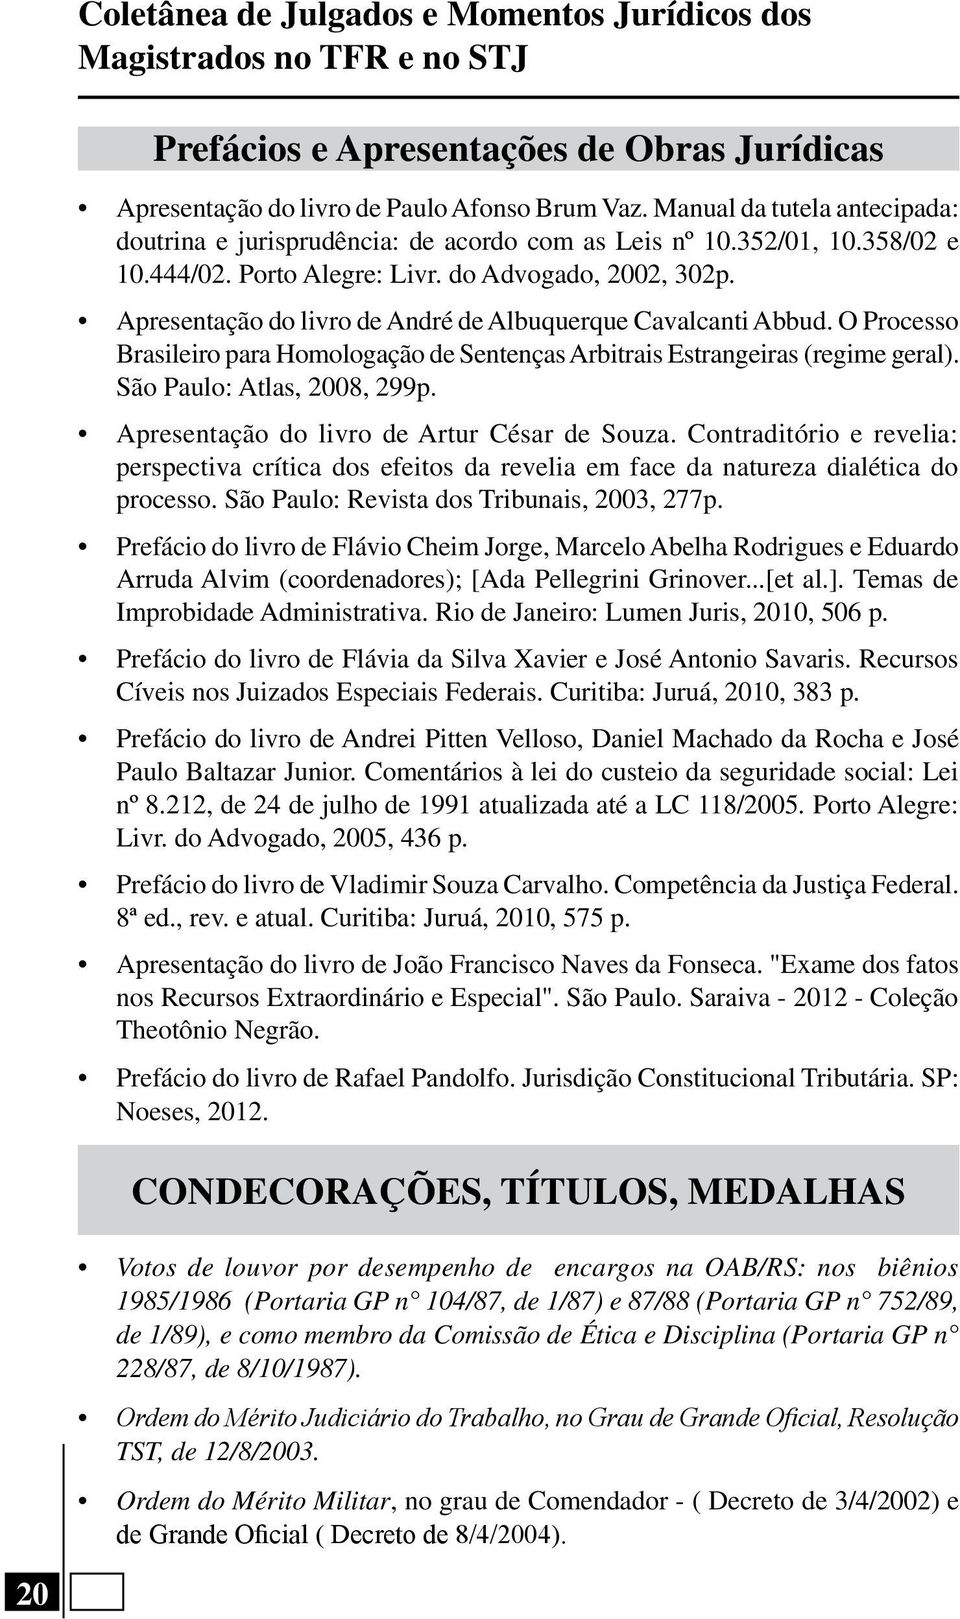 Apresentação do livro de André de Albuquerque Cavalcanti Abbud. O Processo Brasileiro para Homologação de Sentenças Arbitrais Estrangeiras (regime geral). São Paulo: Atlas, 2008, 299p.